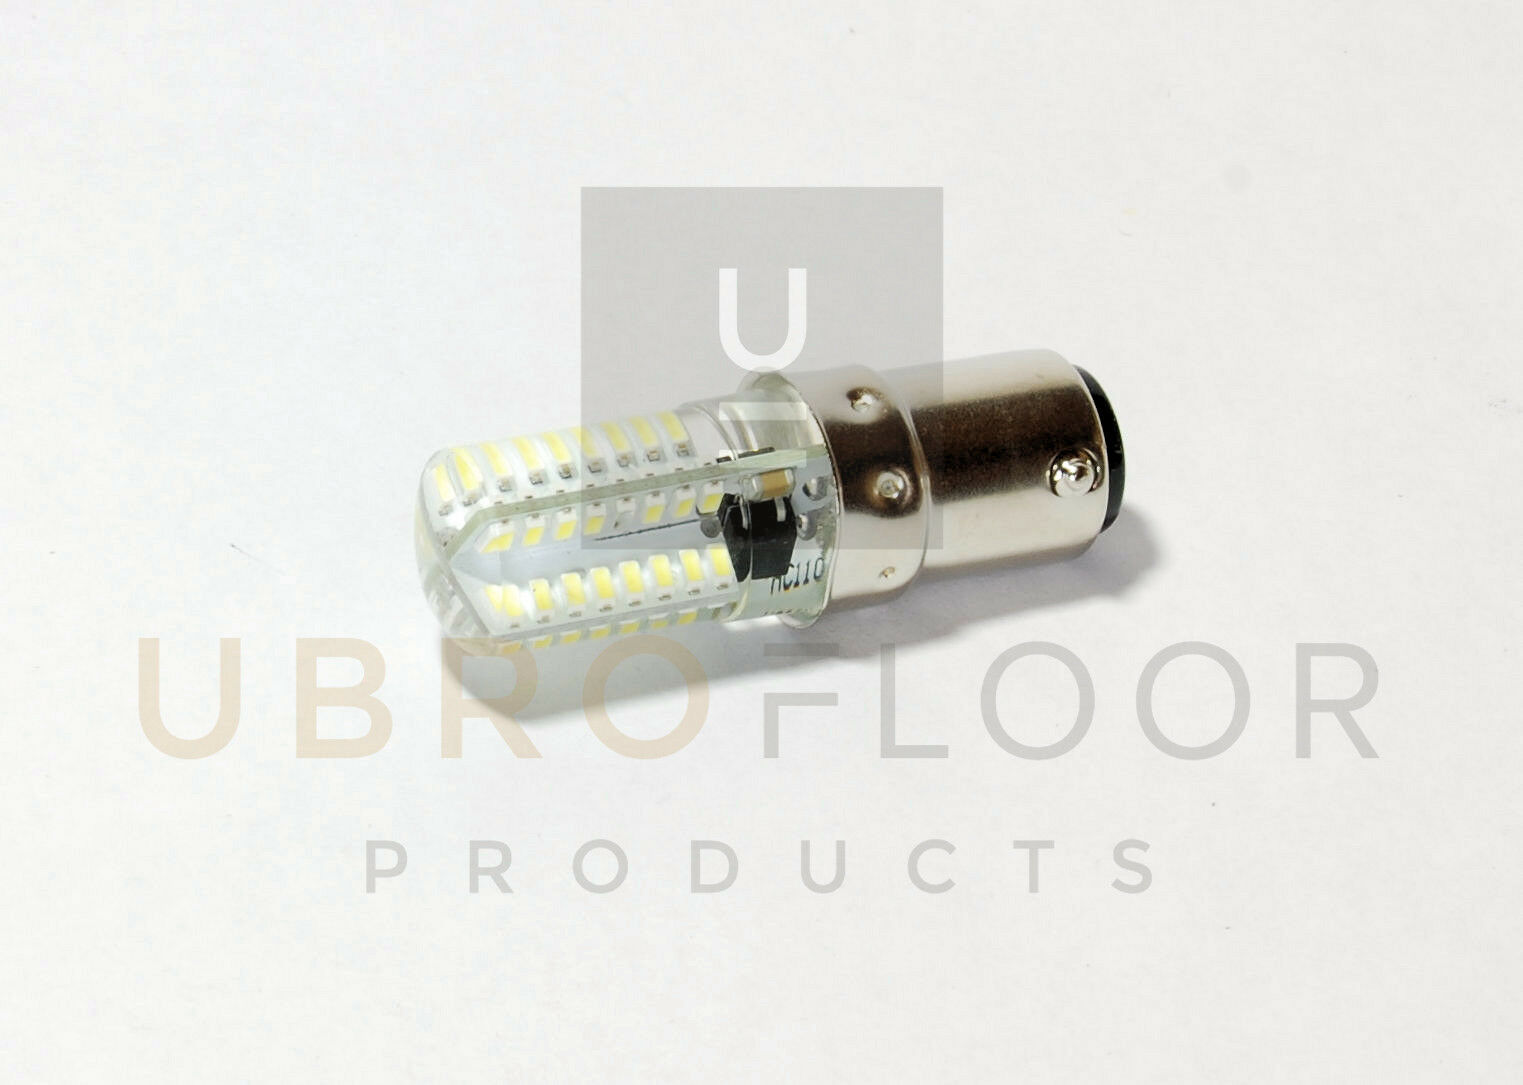 As010200 Led Lightbulb For Clarke Super 7 Or B2 Edger Replaces 911113 Light